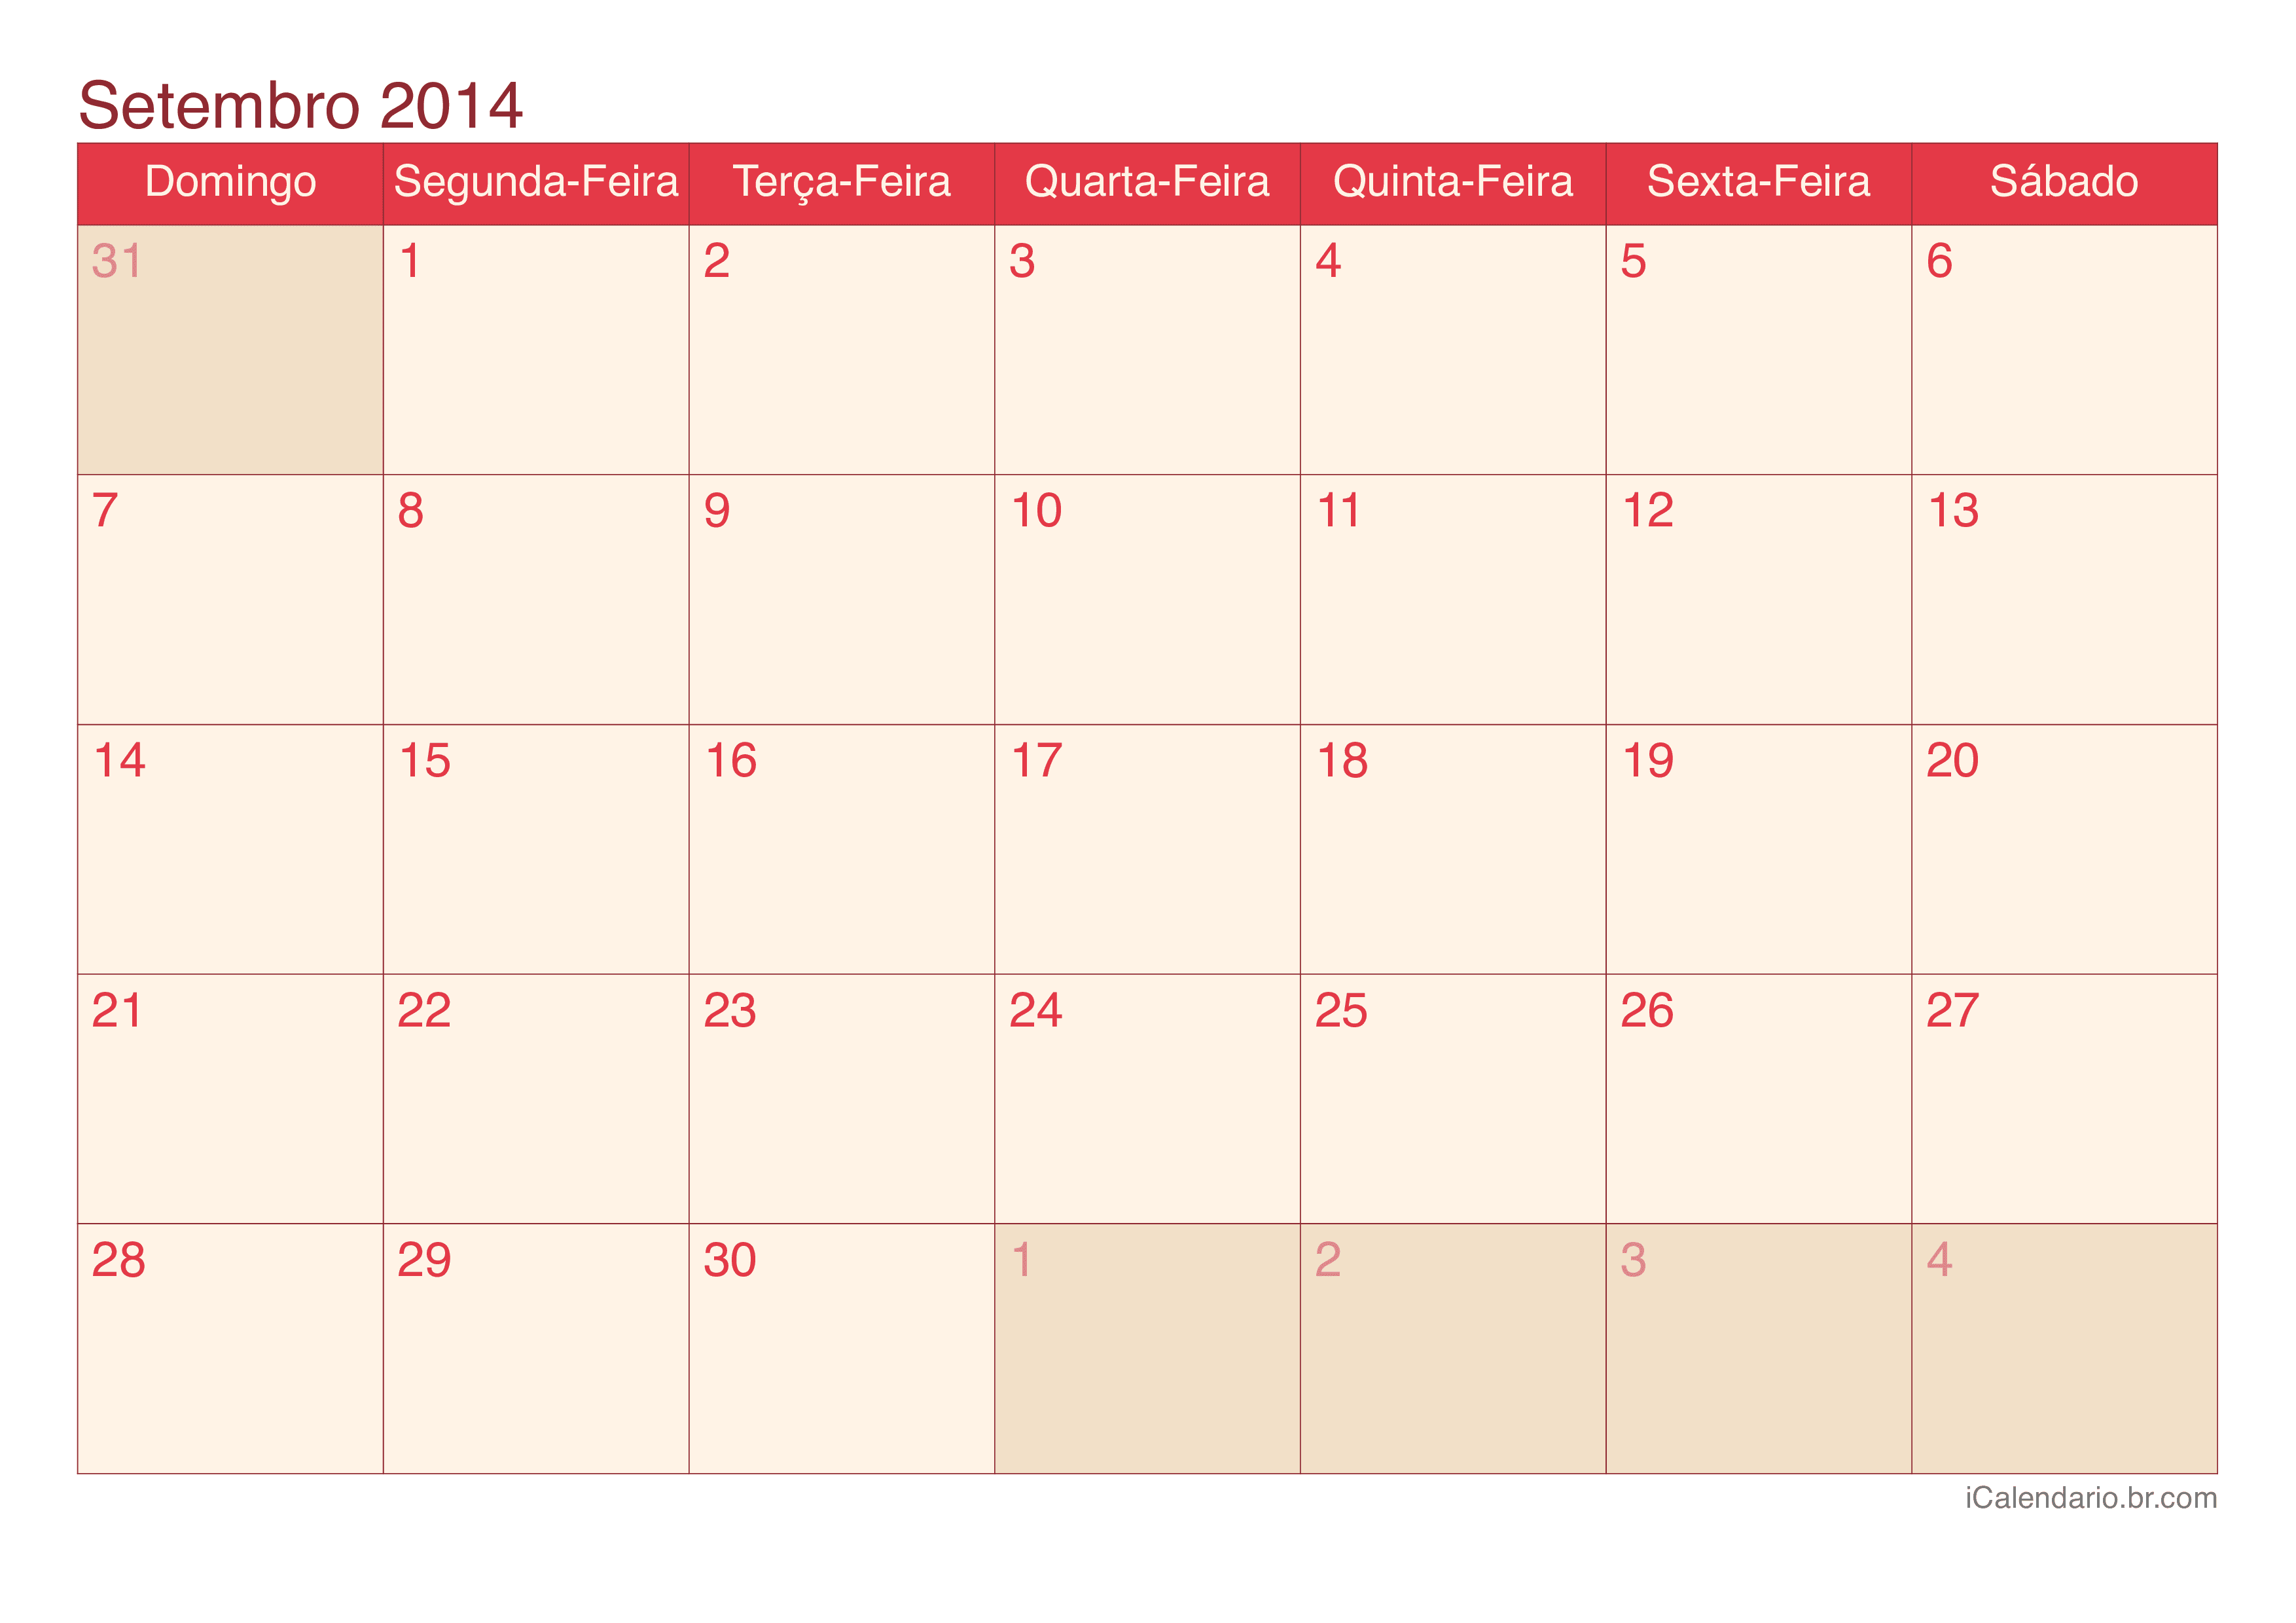 Calendário de setembro 2014 - Cherry